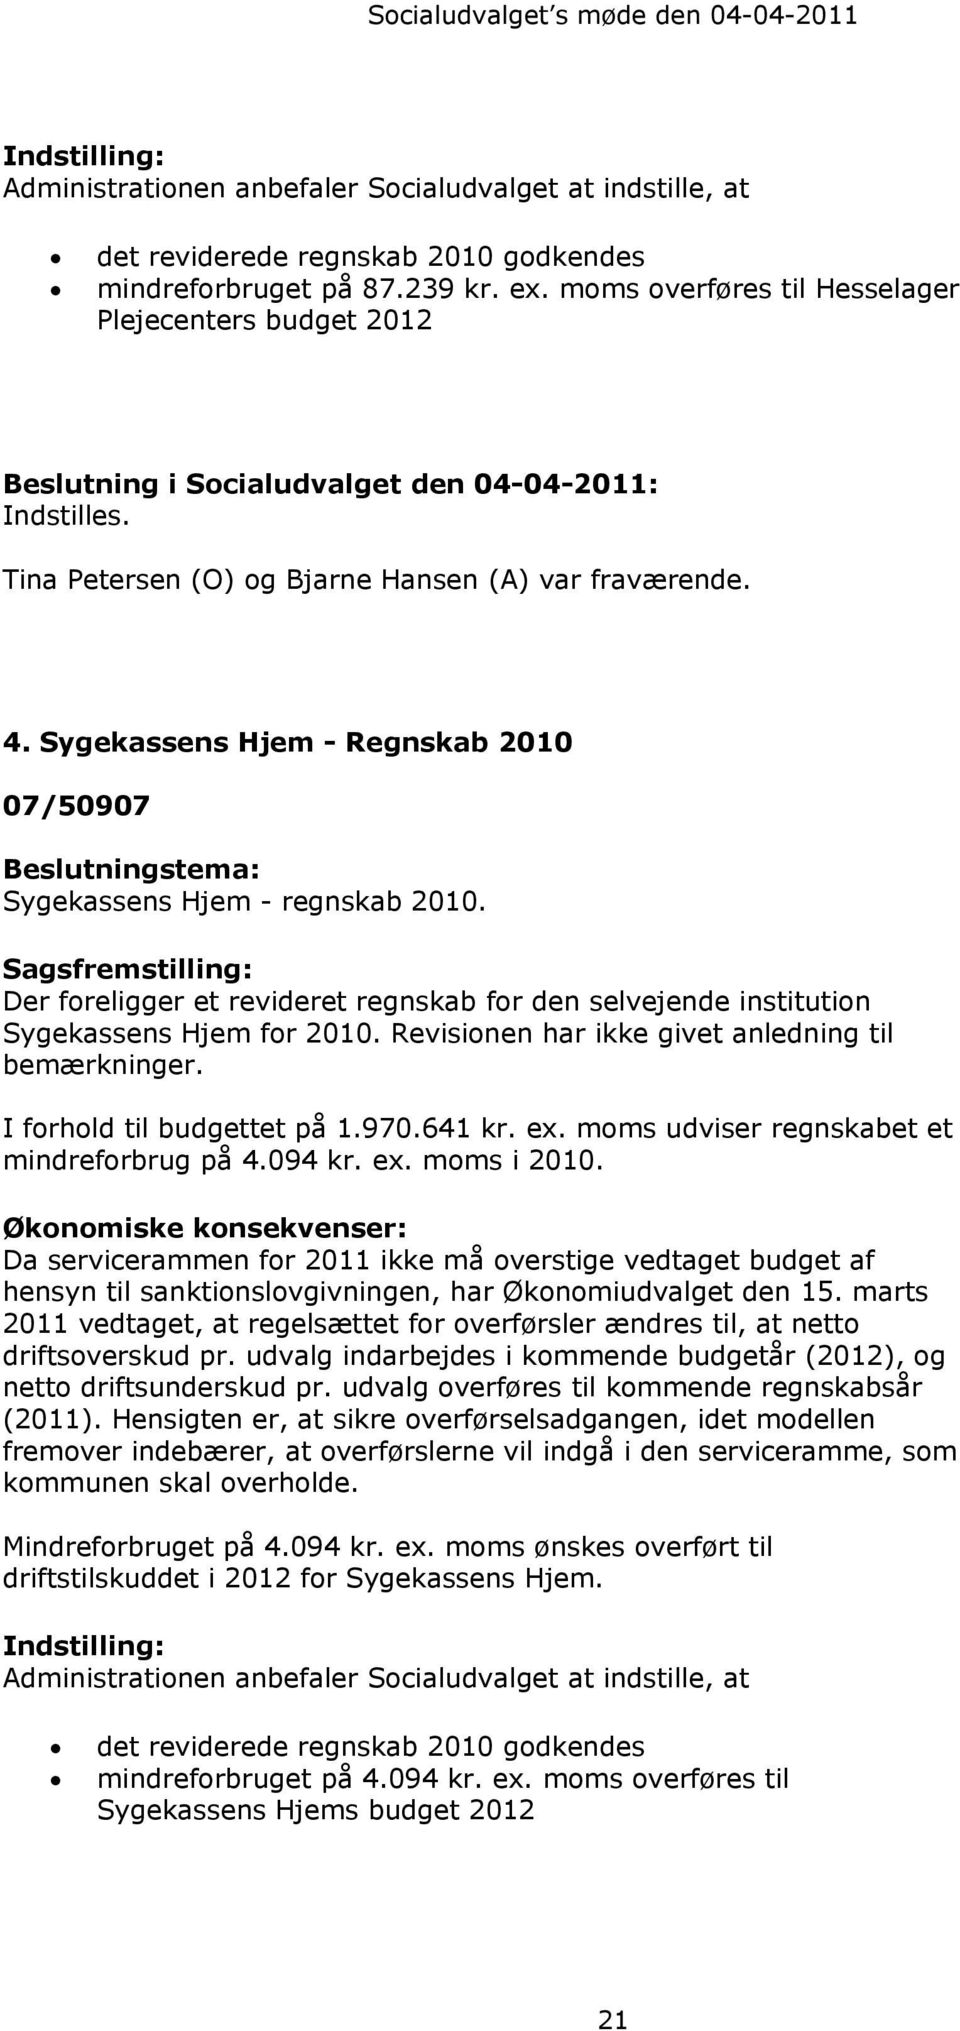 Sygekassens Hjem - Regnskab 2010 07/50907 Beslutningstema: Sygekassens Hjem - regnskab 2010.